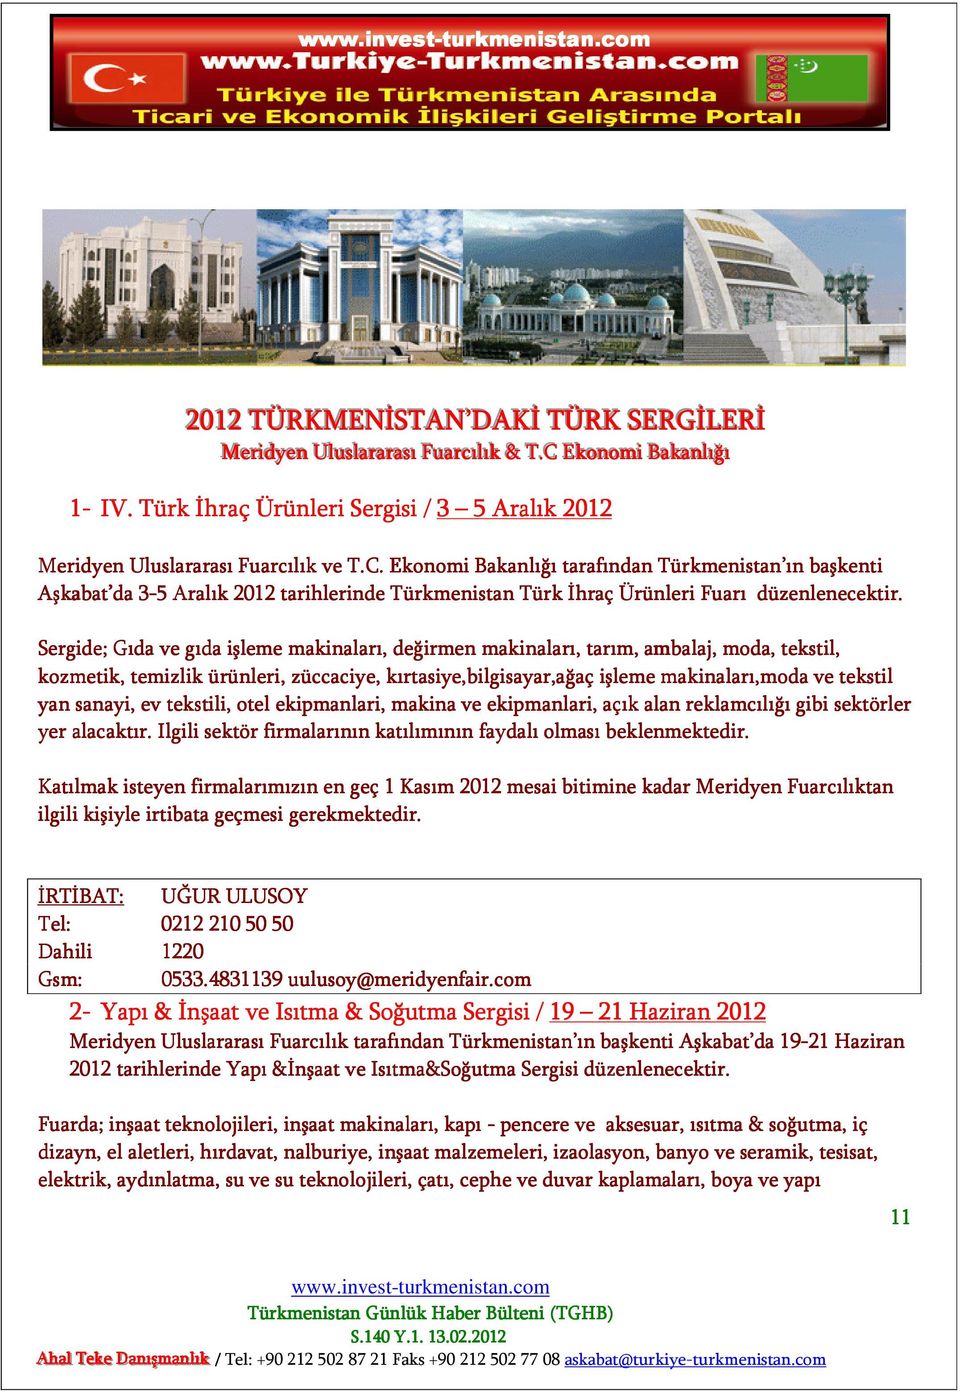 Ekonomi Bakanlığı tarafından Türkmenistan ın başkenti Aşkabat da 3-53 Aralık 2012 tarihlerinde Türkmenistan Türk İhraç Ürünleri Fuarı düzenlenecektir.